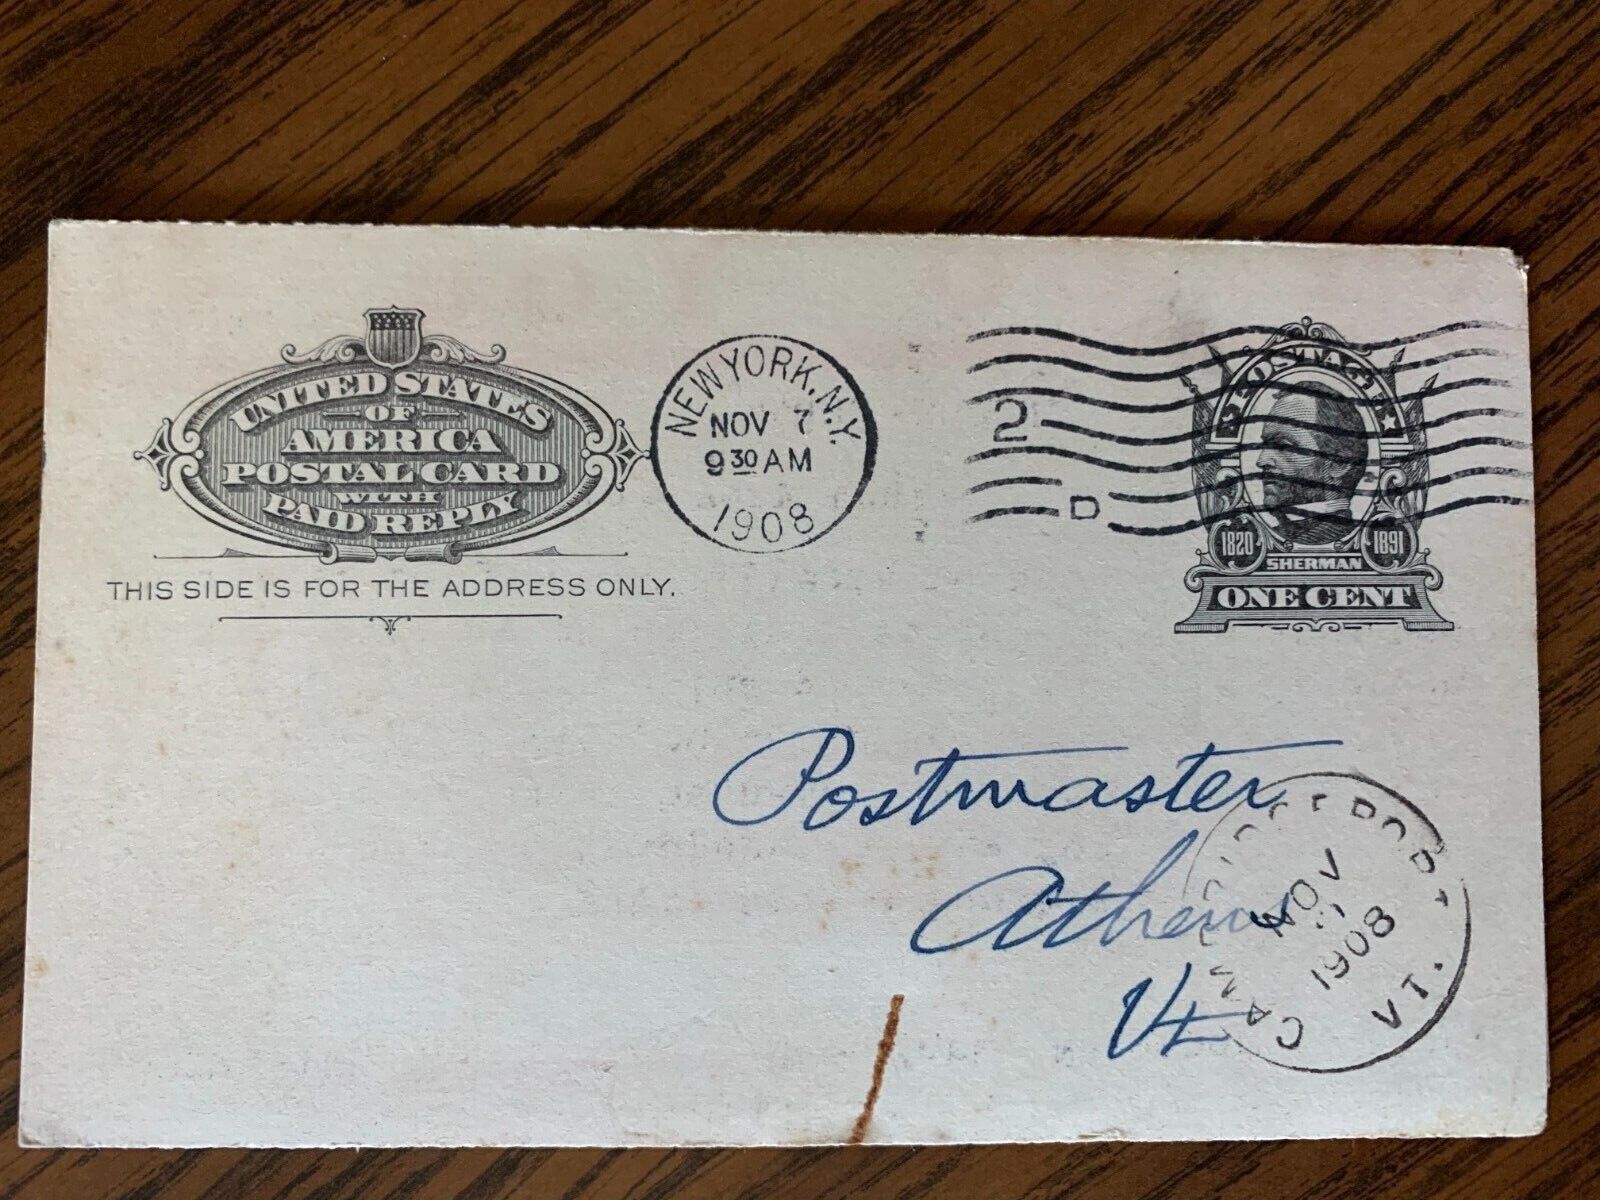 Paul Belden - United States Postal Card ~ Postcard Posted - Nov 7 1908